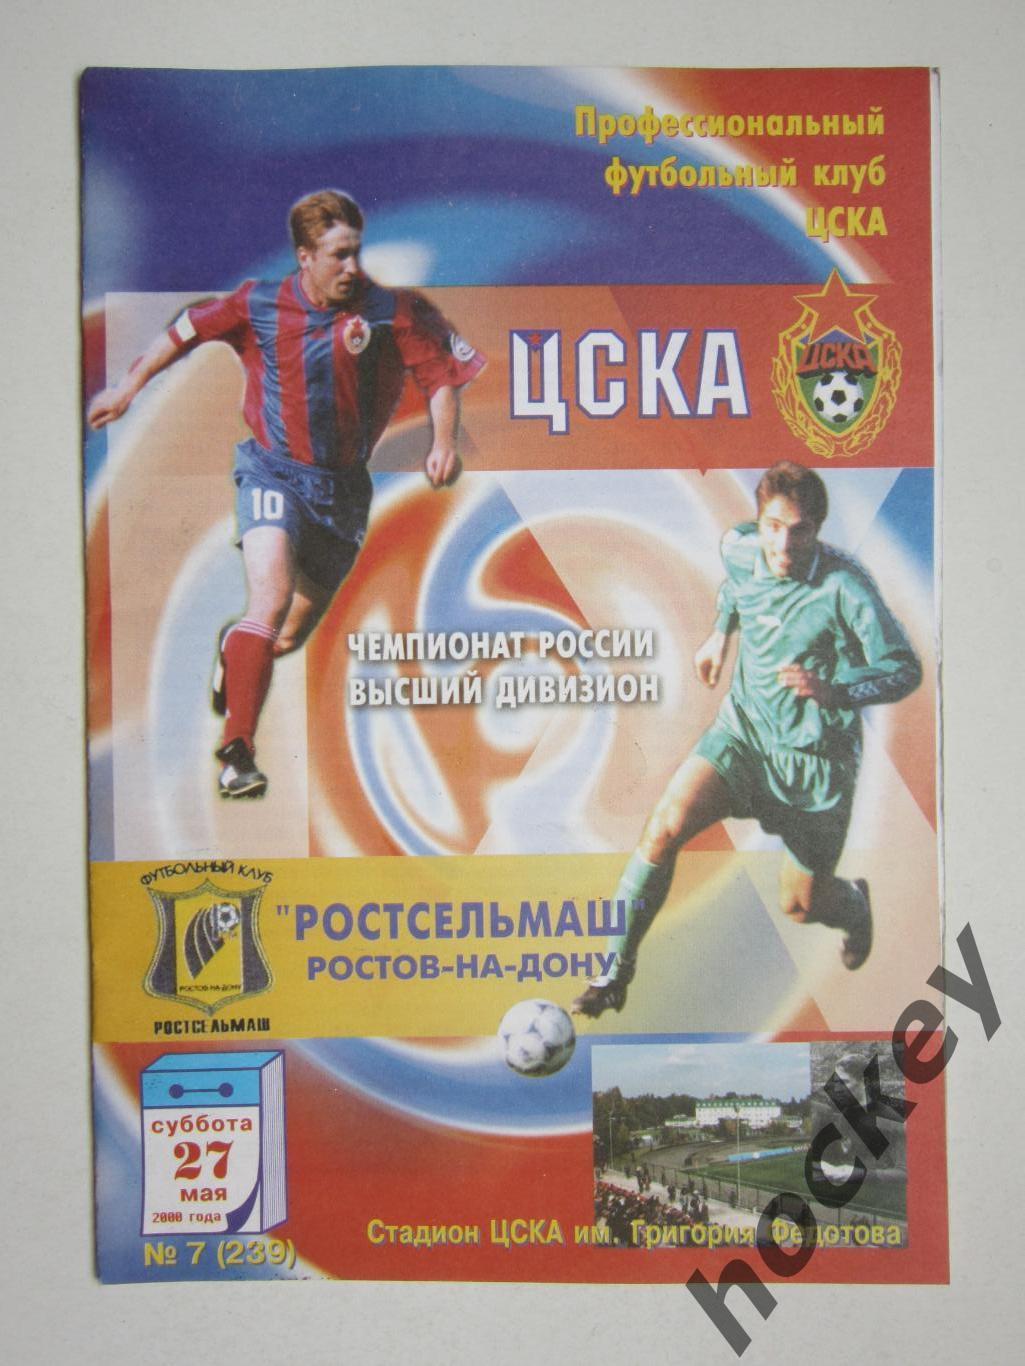 ЦСКА Москва - Ростсельмаш Ростов-на-Дону 27.05.2000